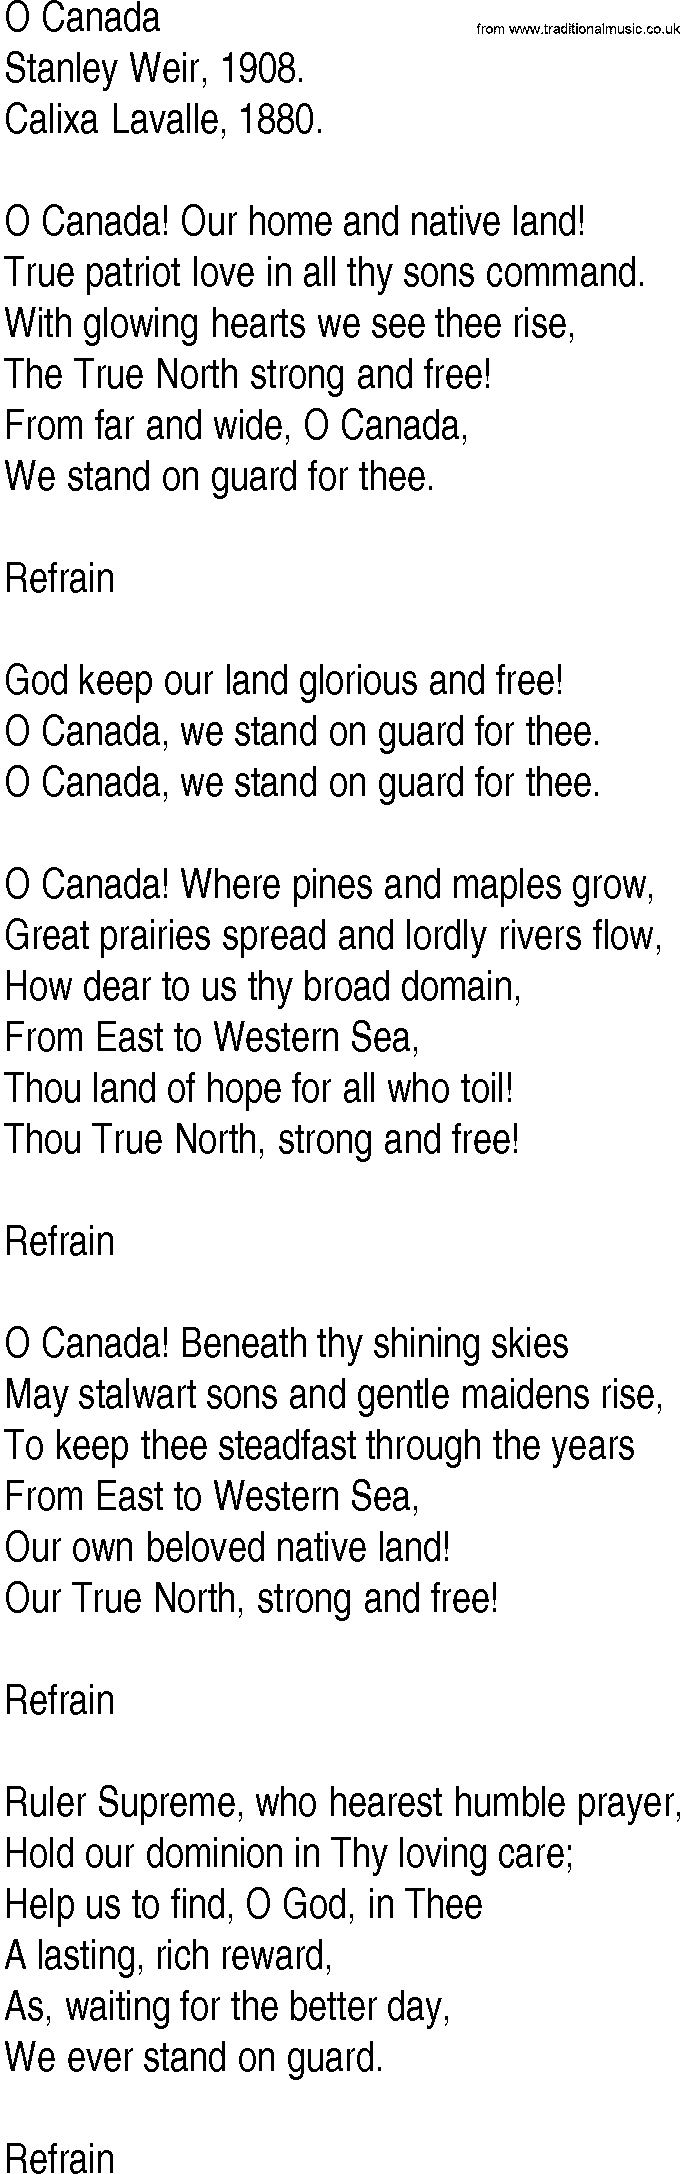 Hymn and Gospel Song: O Canada by Stanley Weir lyrics